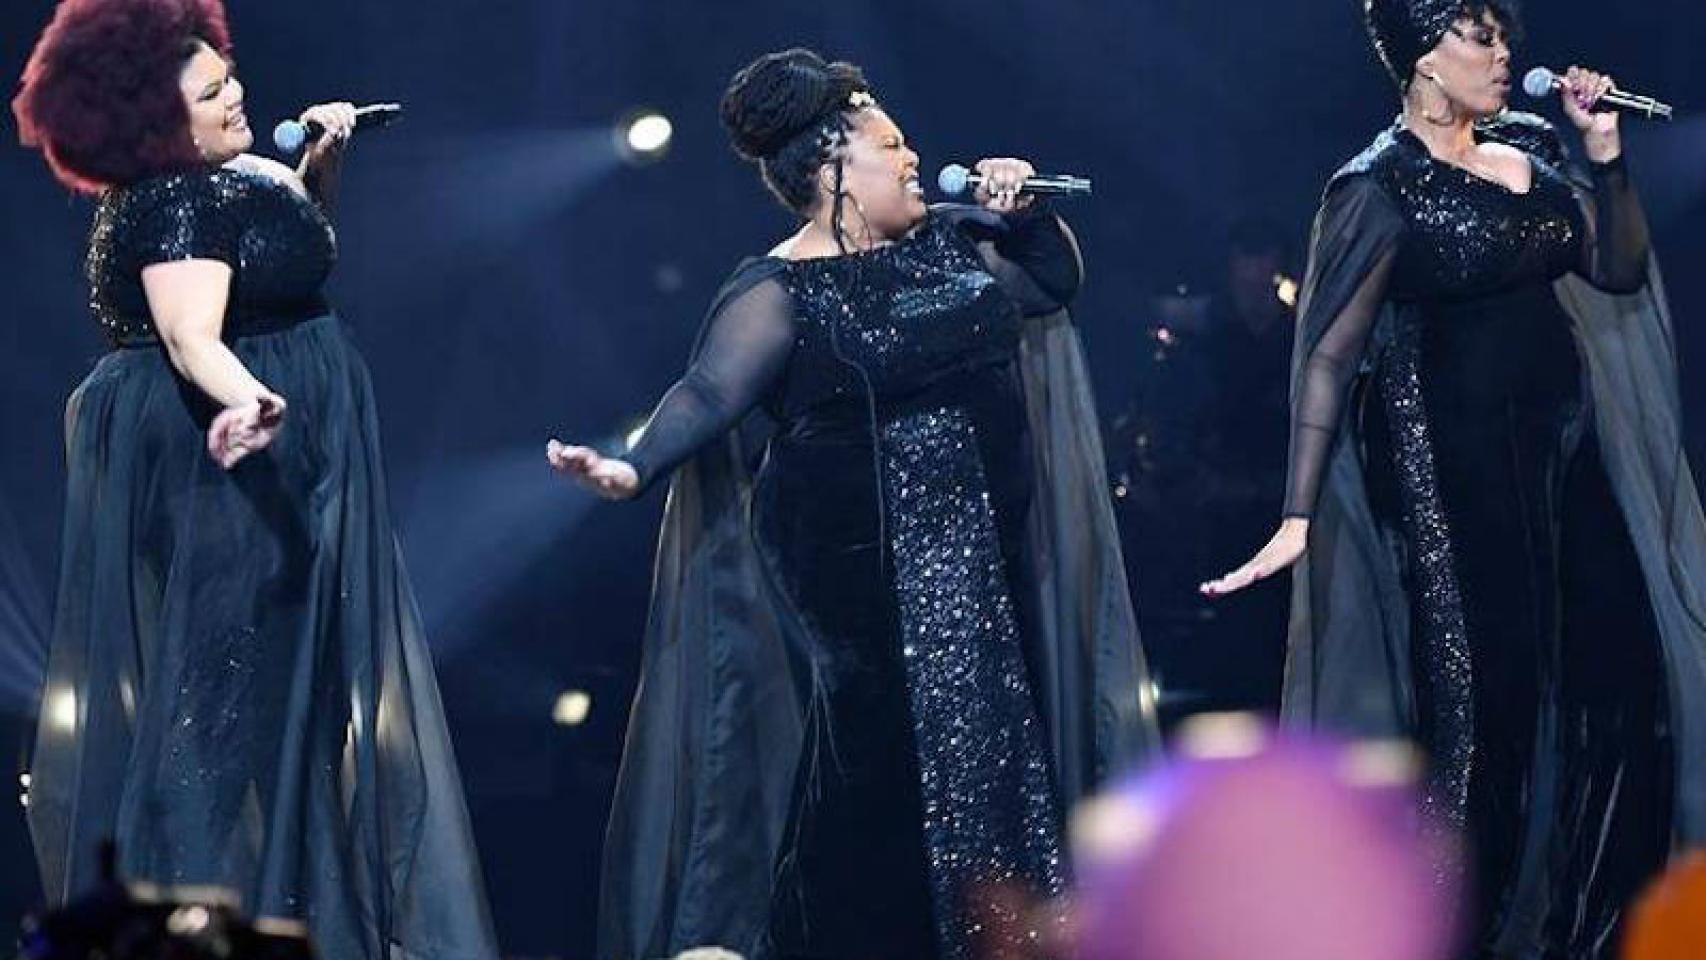 The Mamas ganan un ajustado Melodifestivalen y representarán a Suecia en Eurovisión